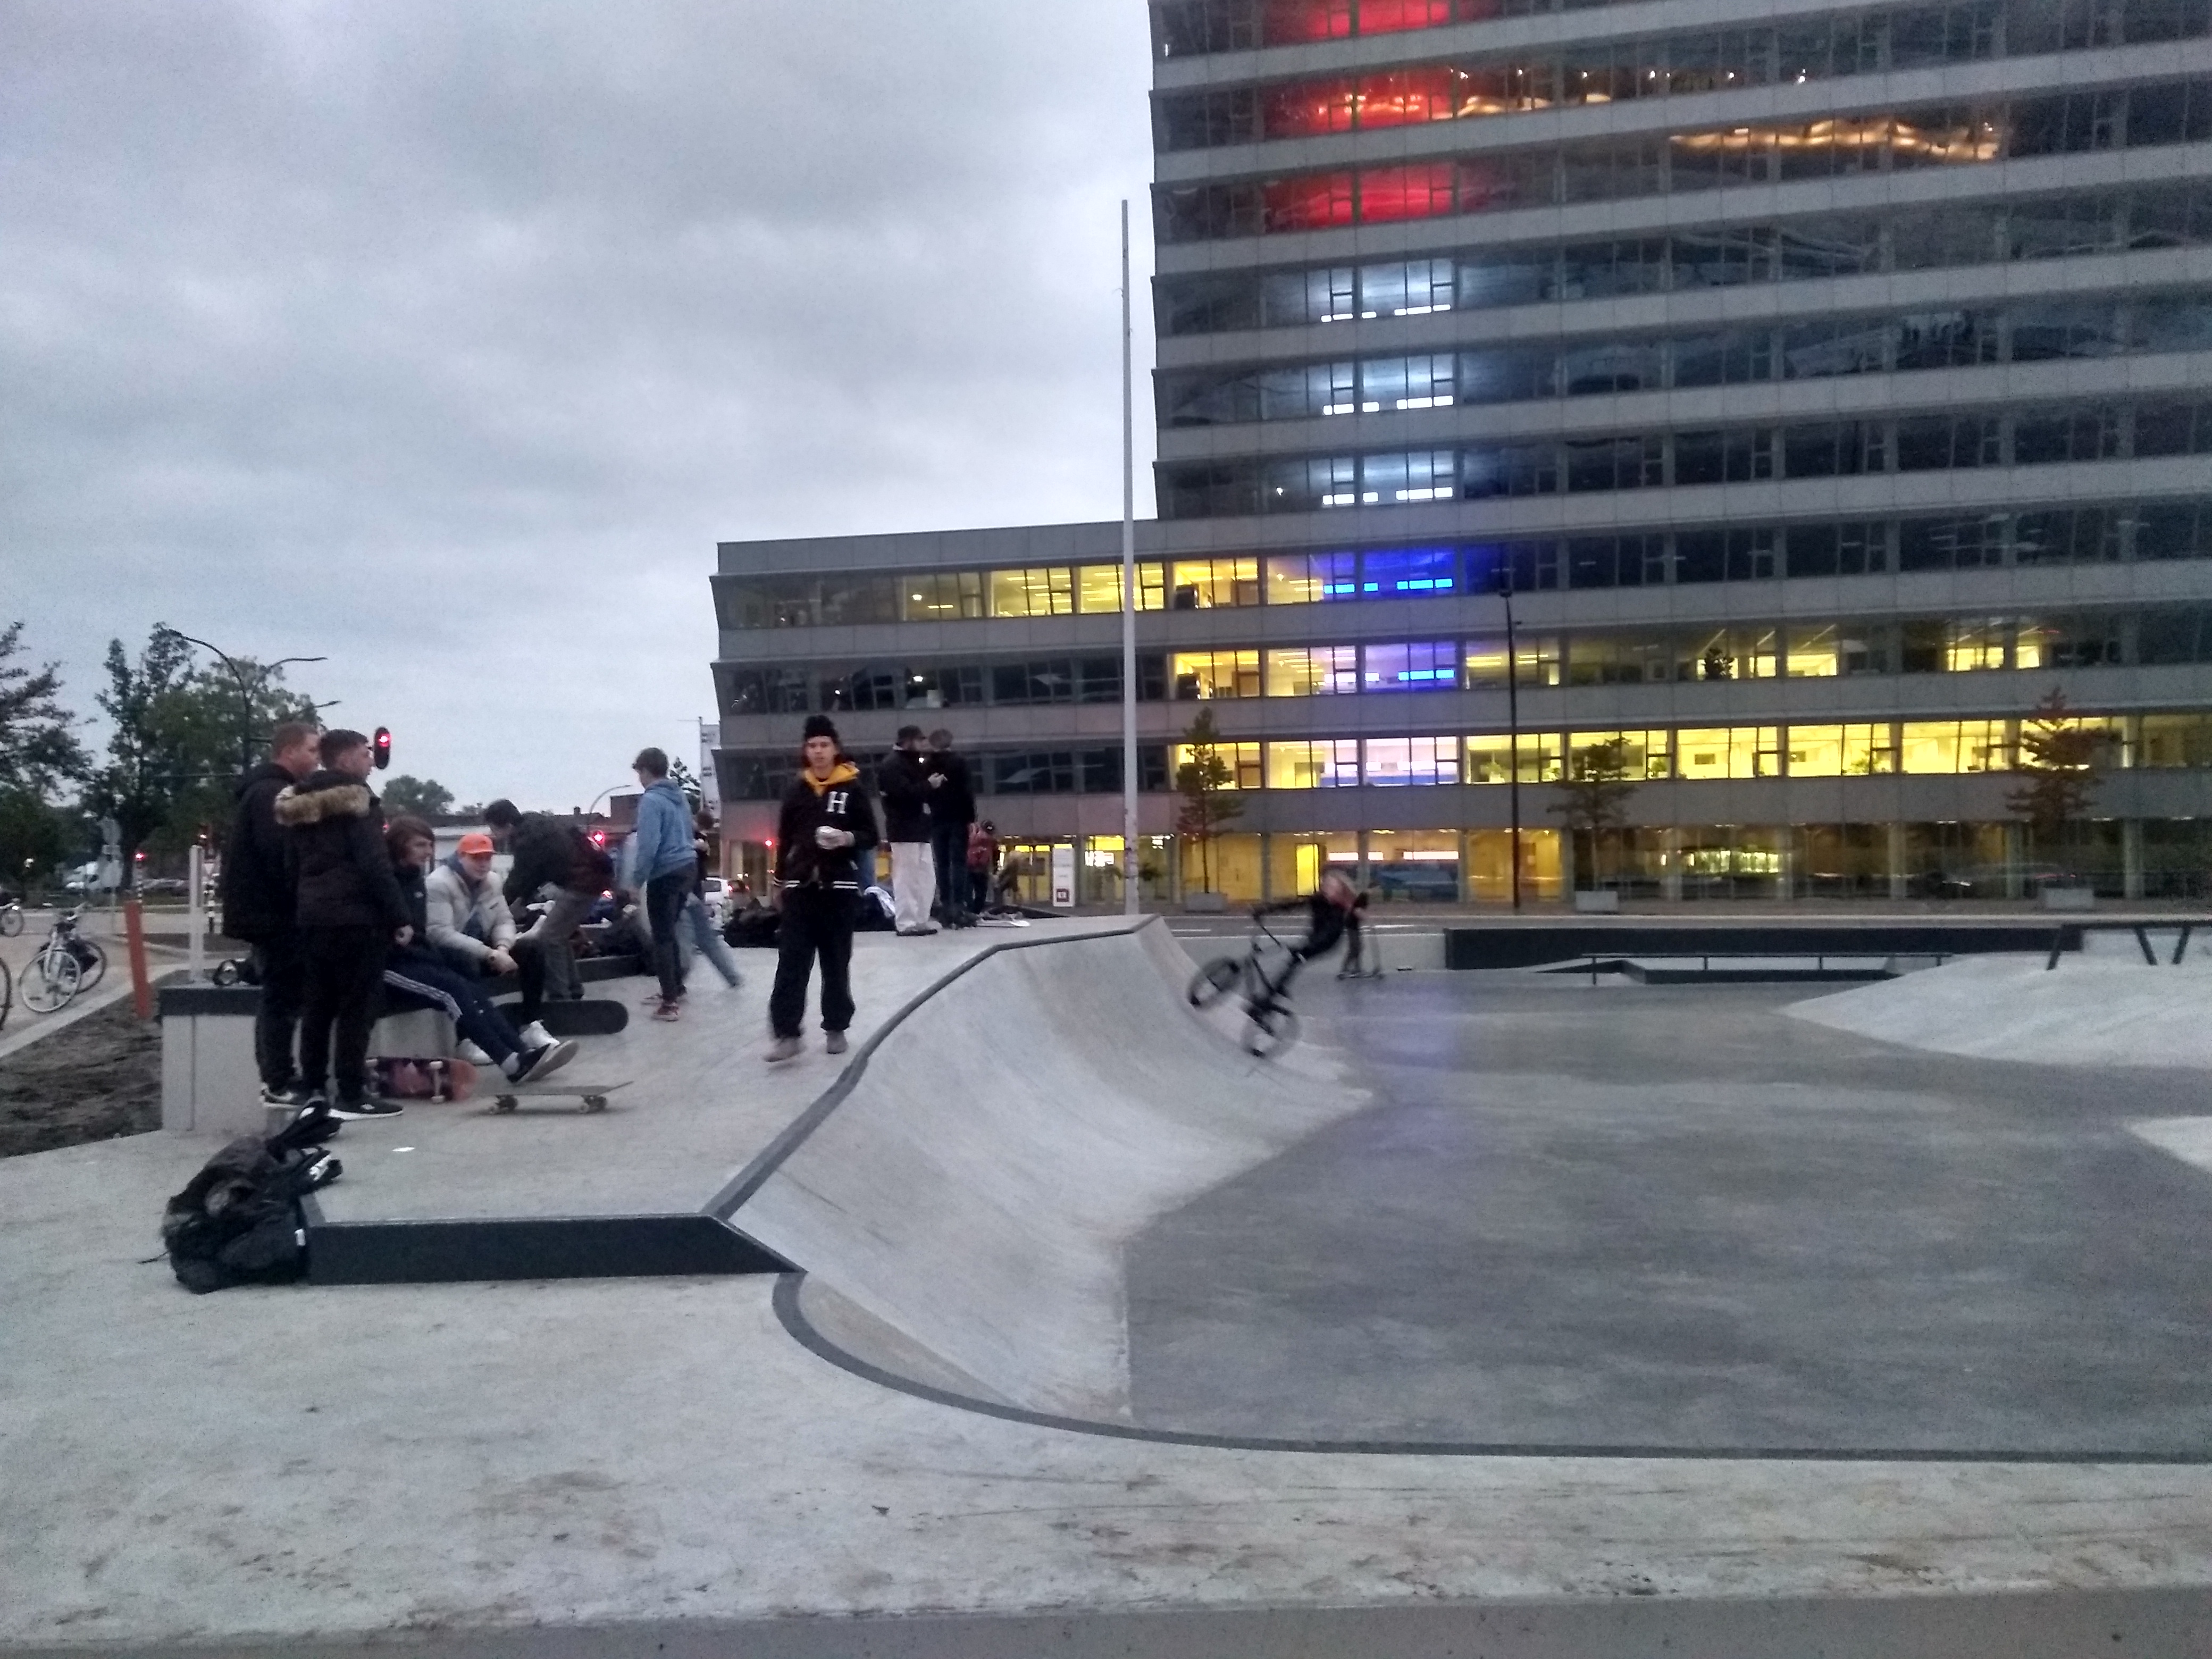 https://hengelo.sp.nl/nieuws/2019/11/de-gewonnen-strijd-voor-een-skatepark-in-hartje-hengelo